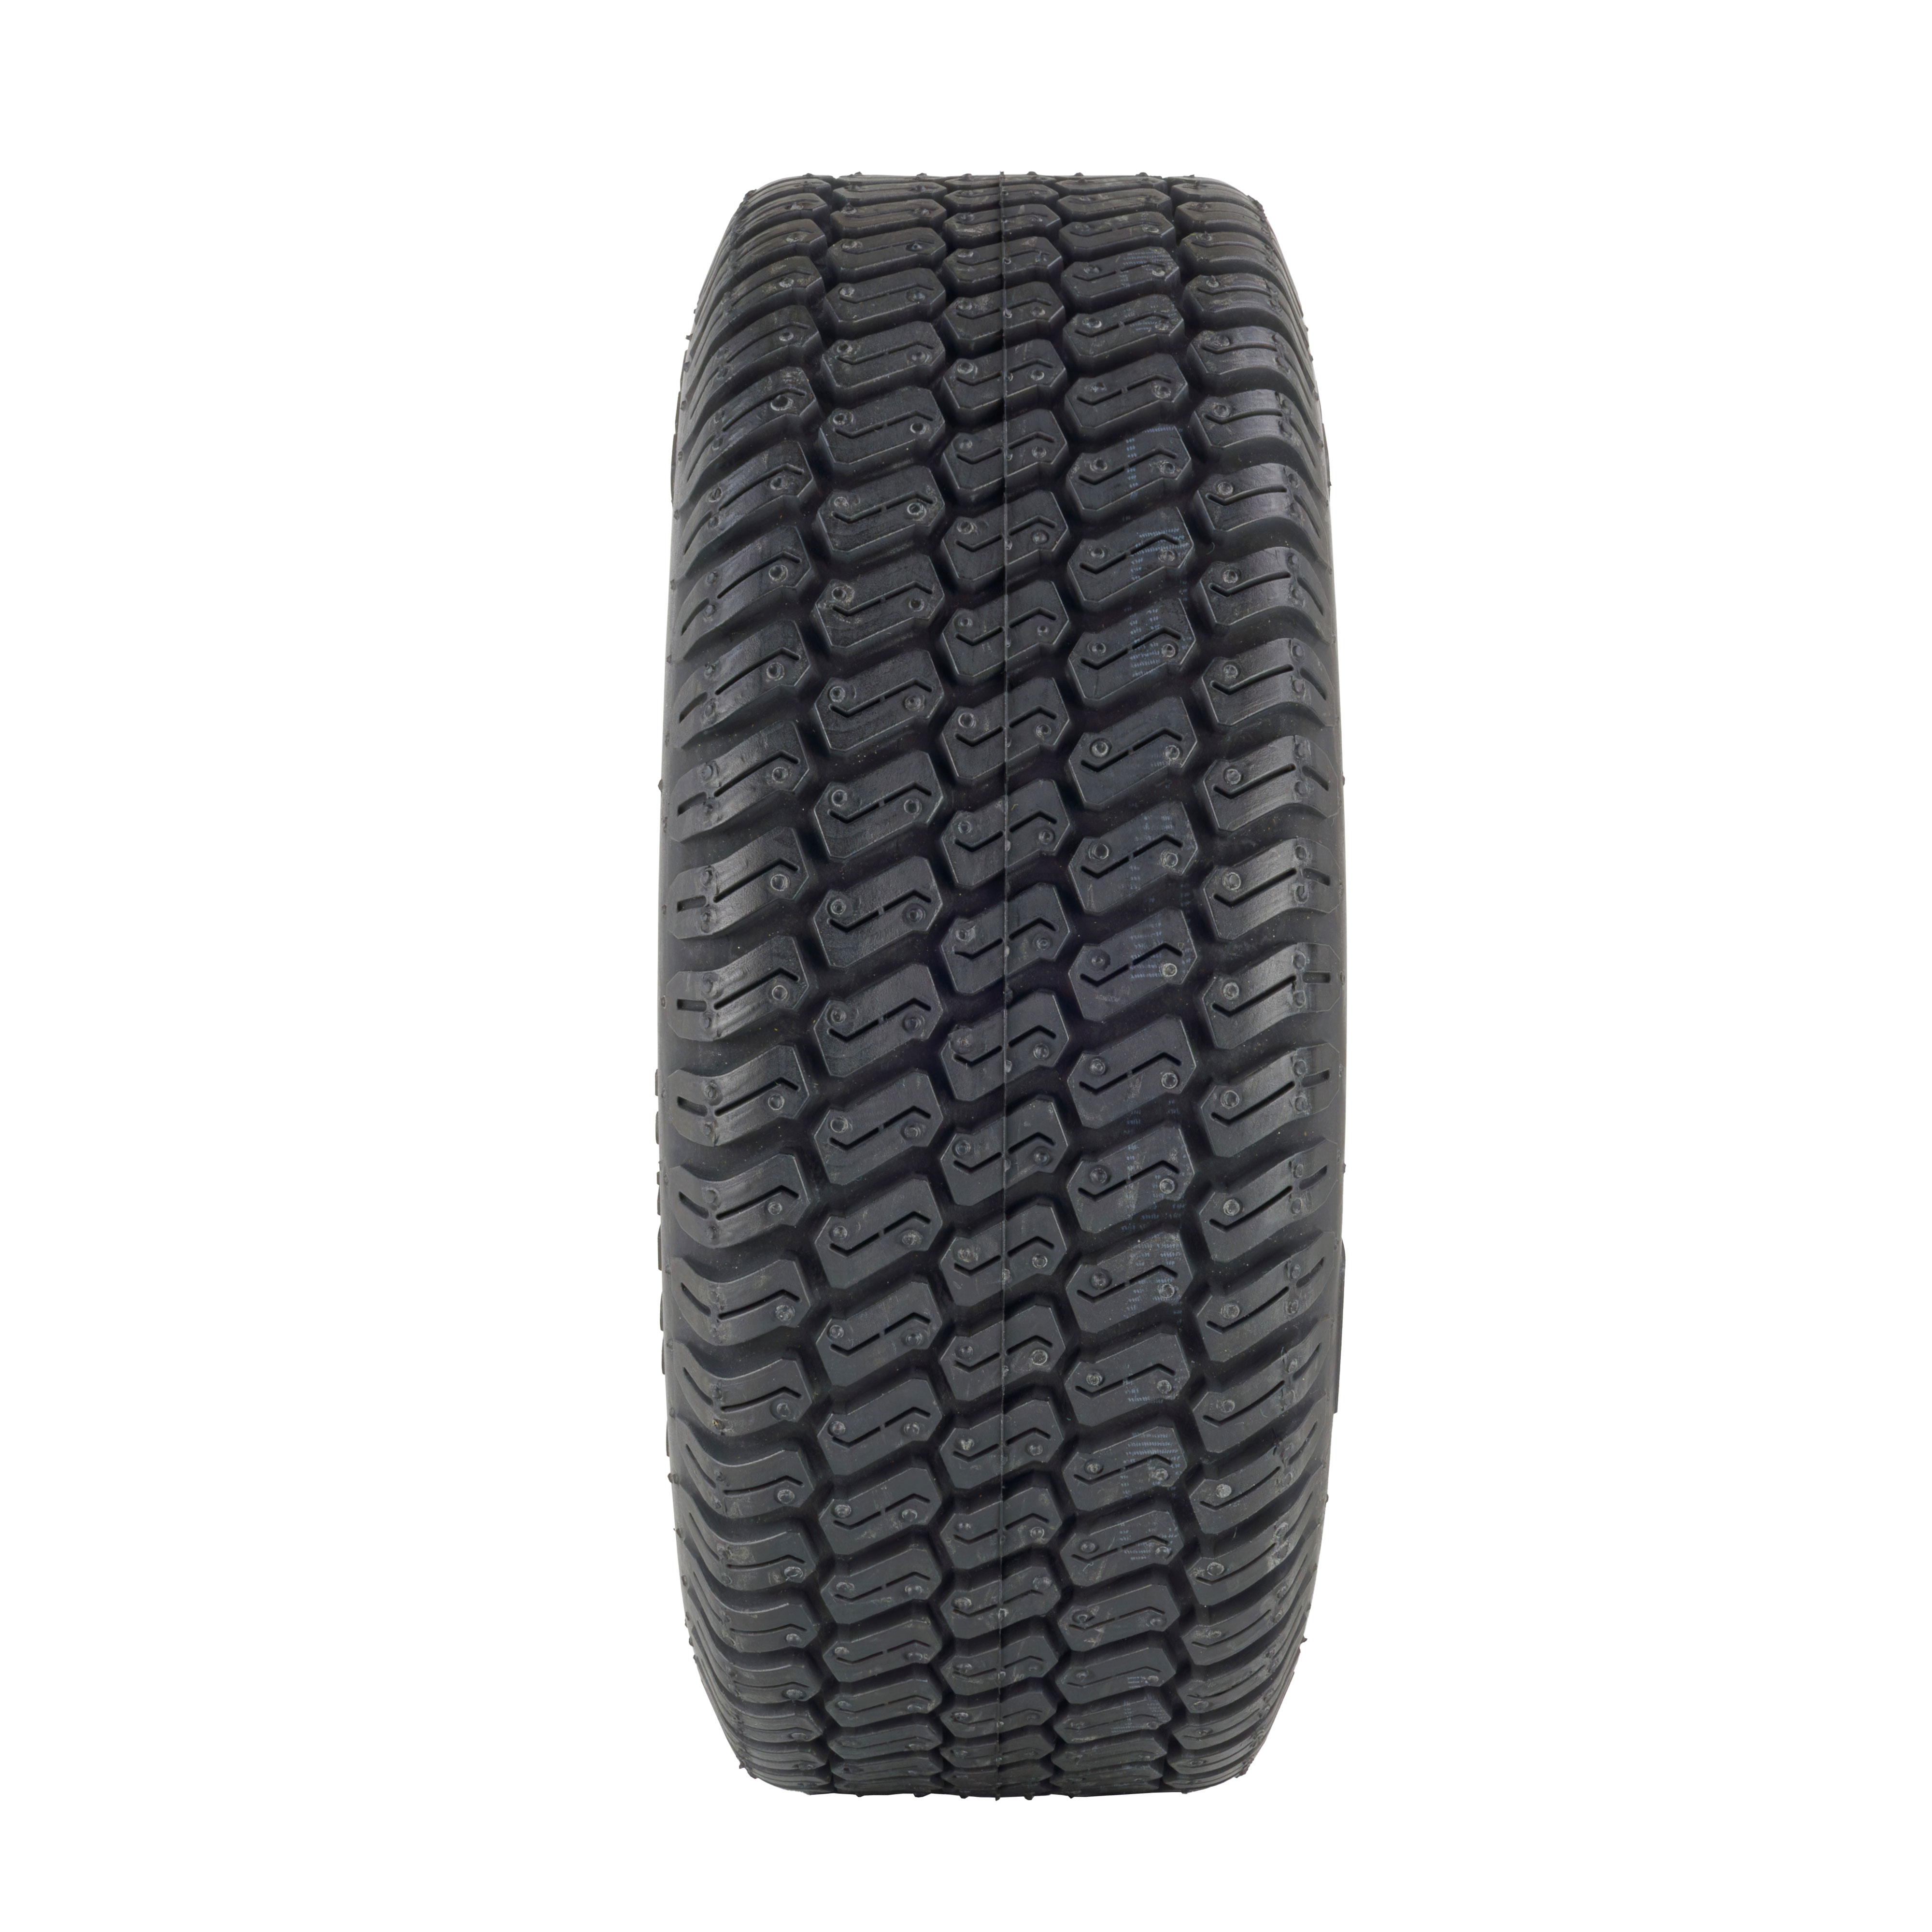 Rasen-Reifen für Aufsitzmäher, 13x5.00-6, 4PR, BKT LG306 - Profilansicht